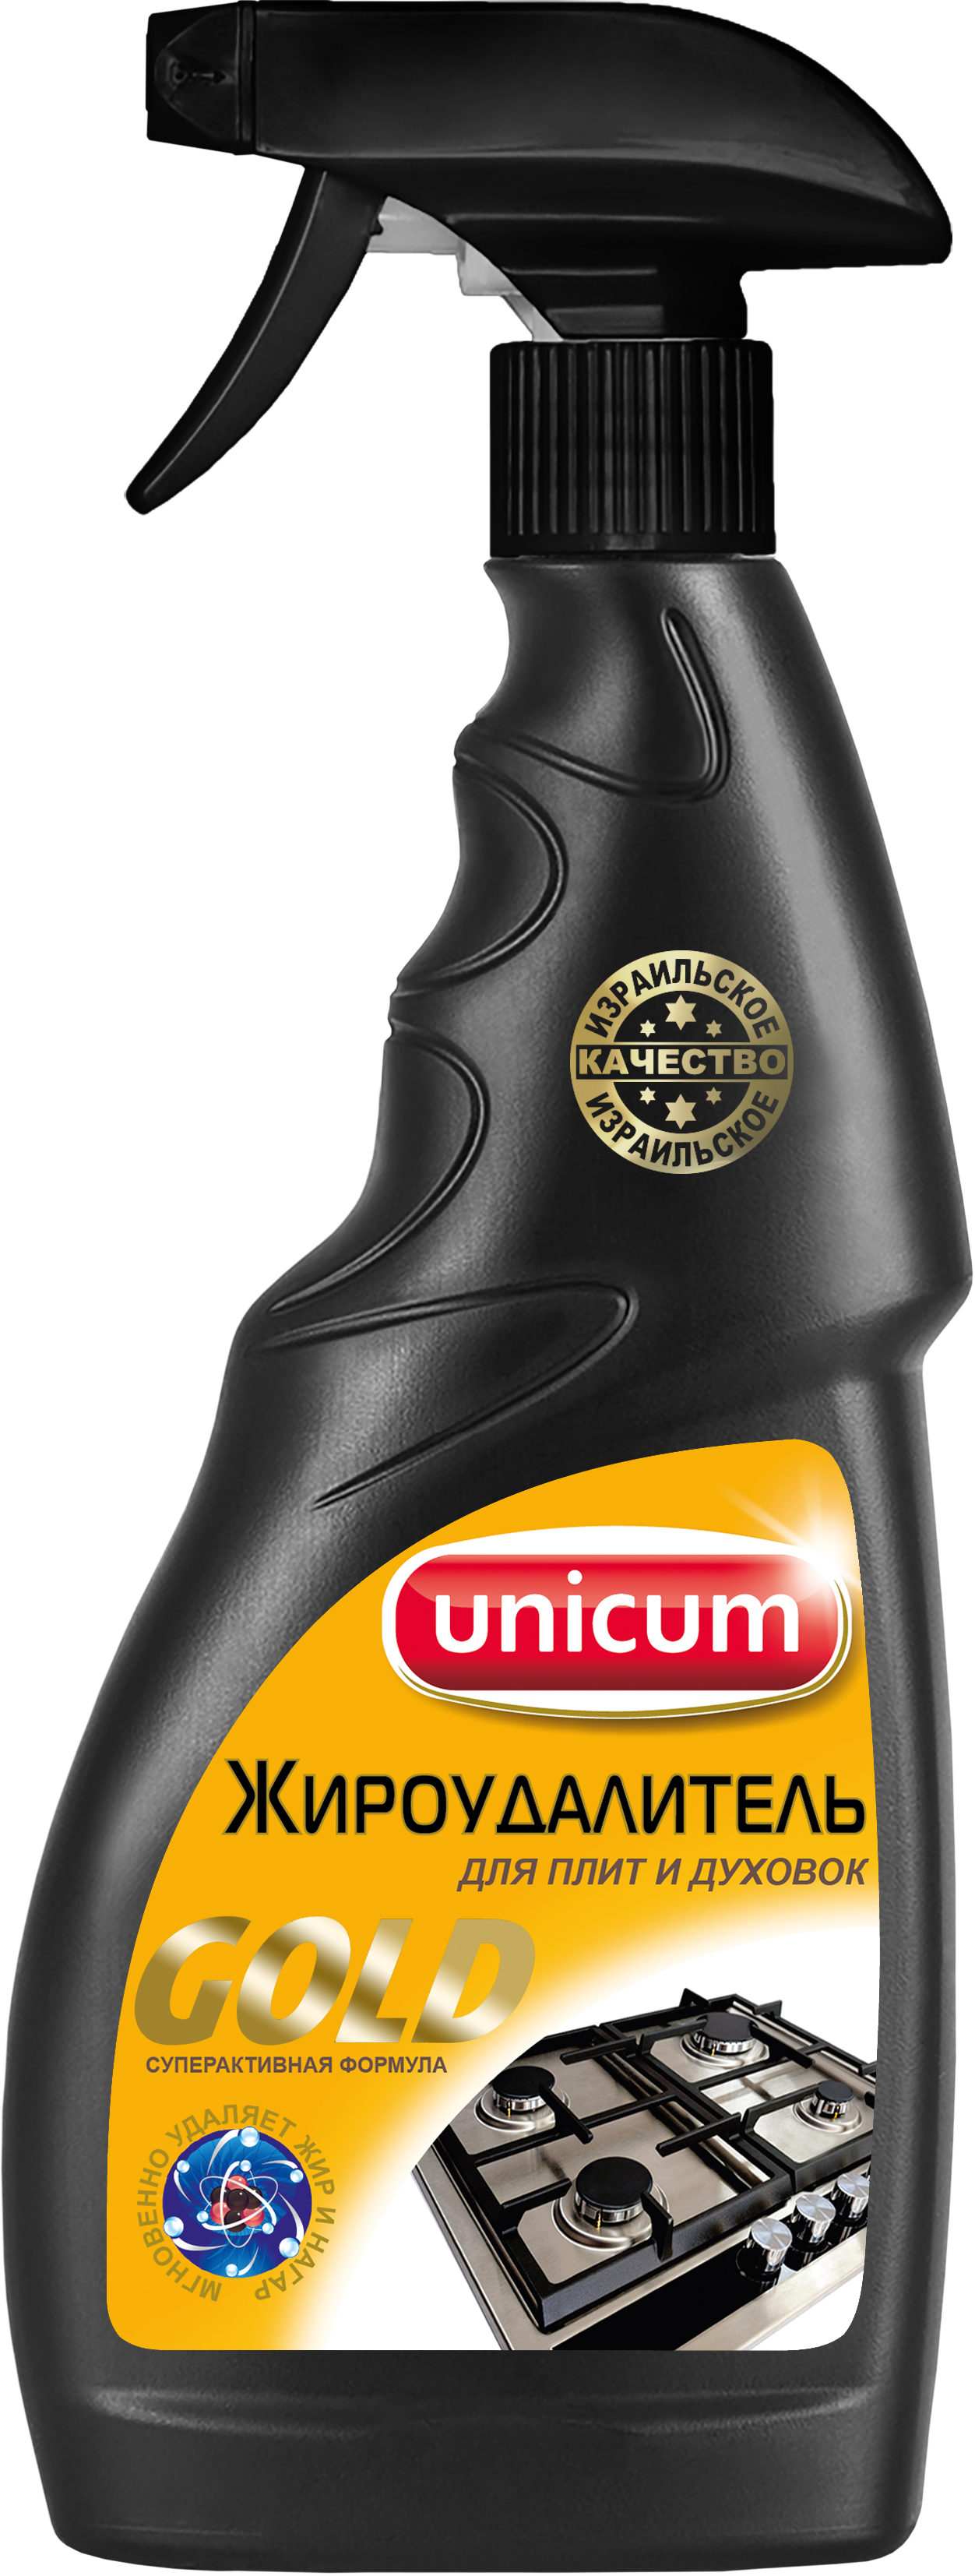 unicum жироудалитель